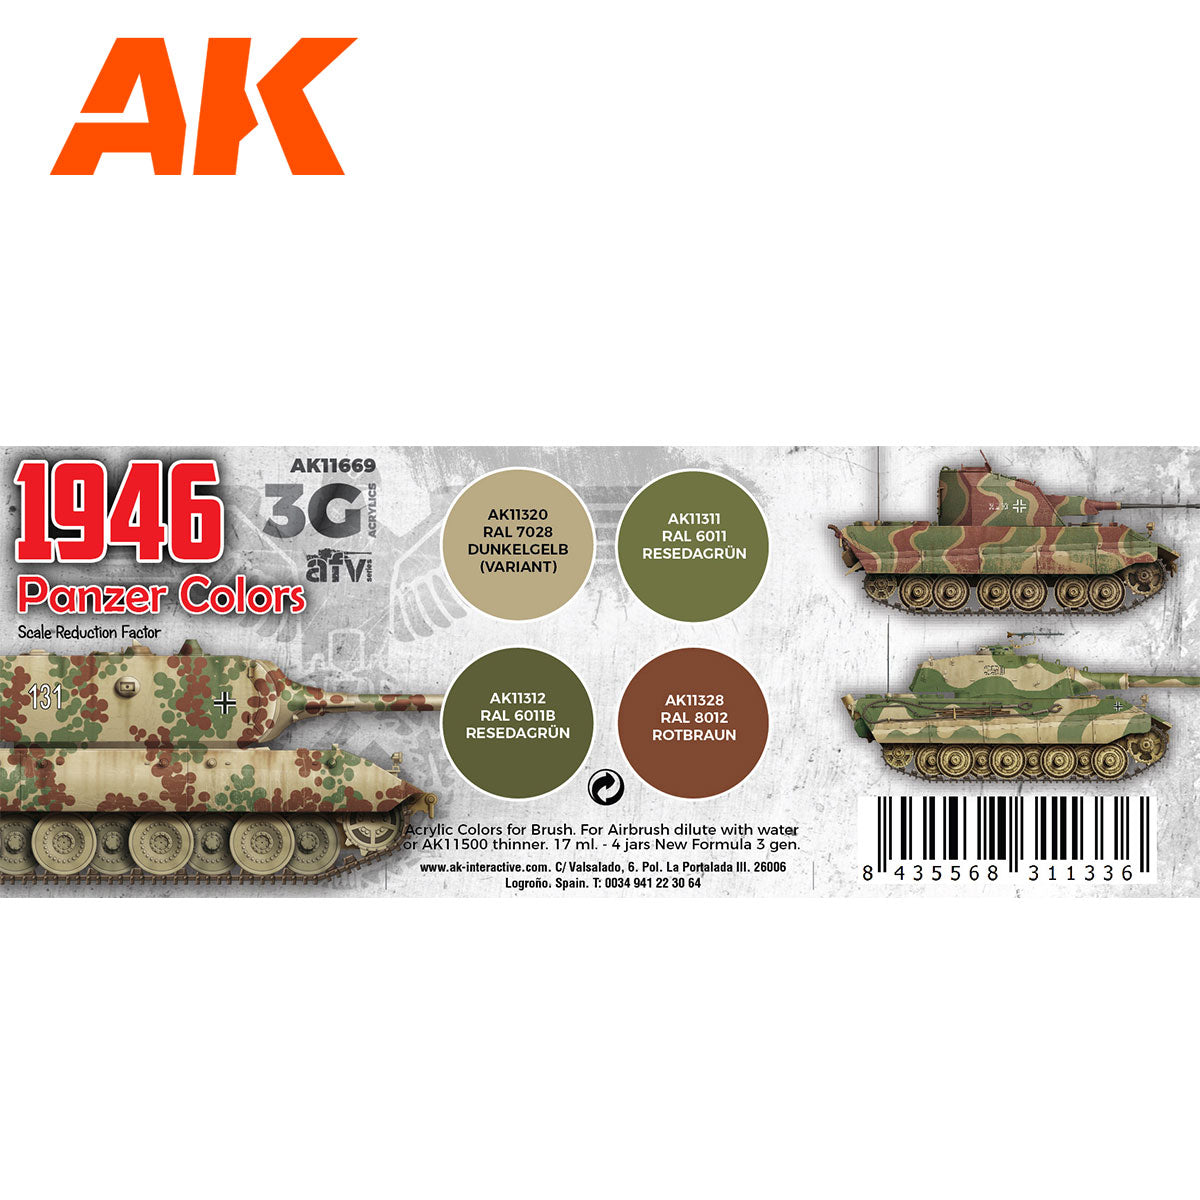 3Gen AFV Paint Set - Panzer Colors 1946 - Loaded Dice